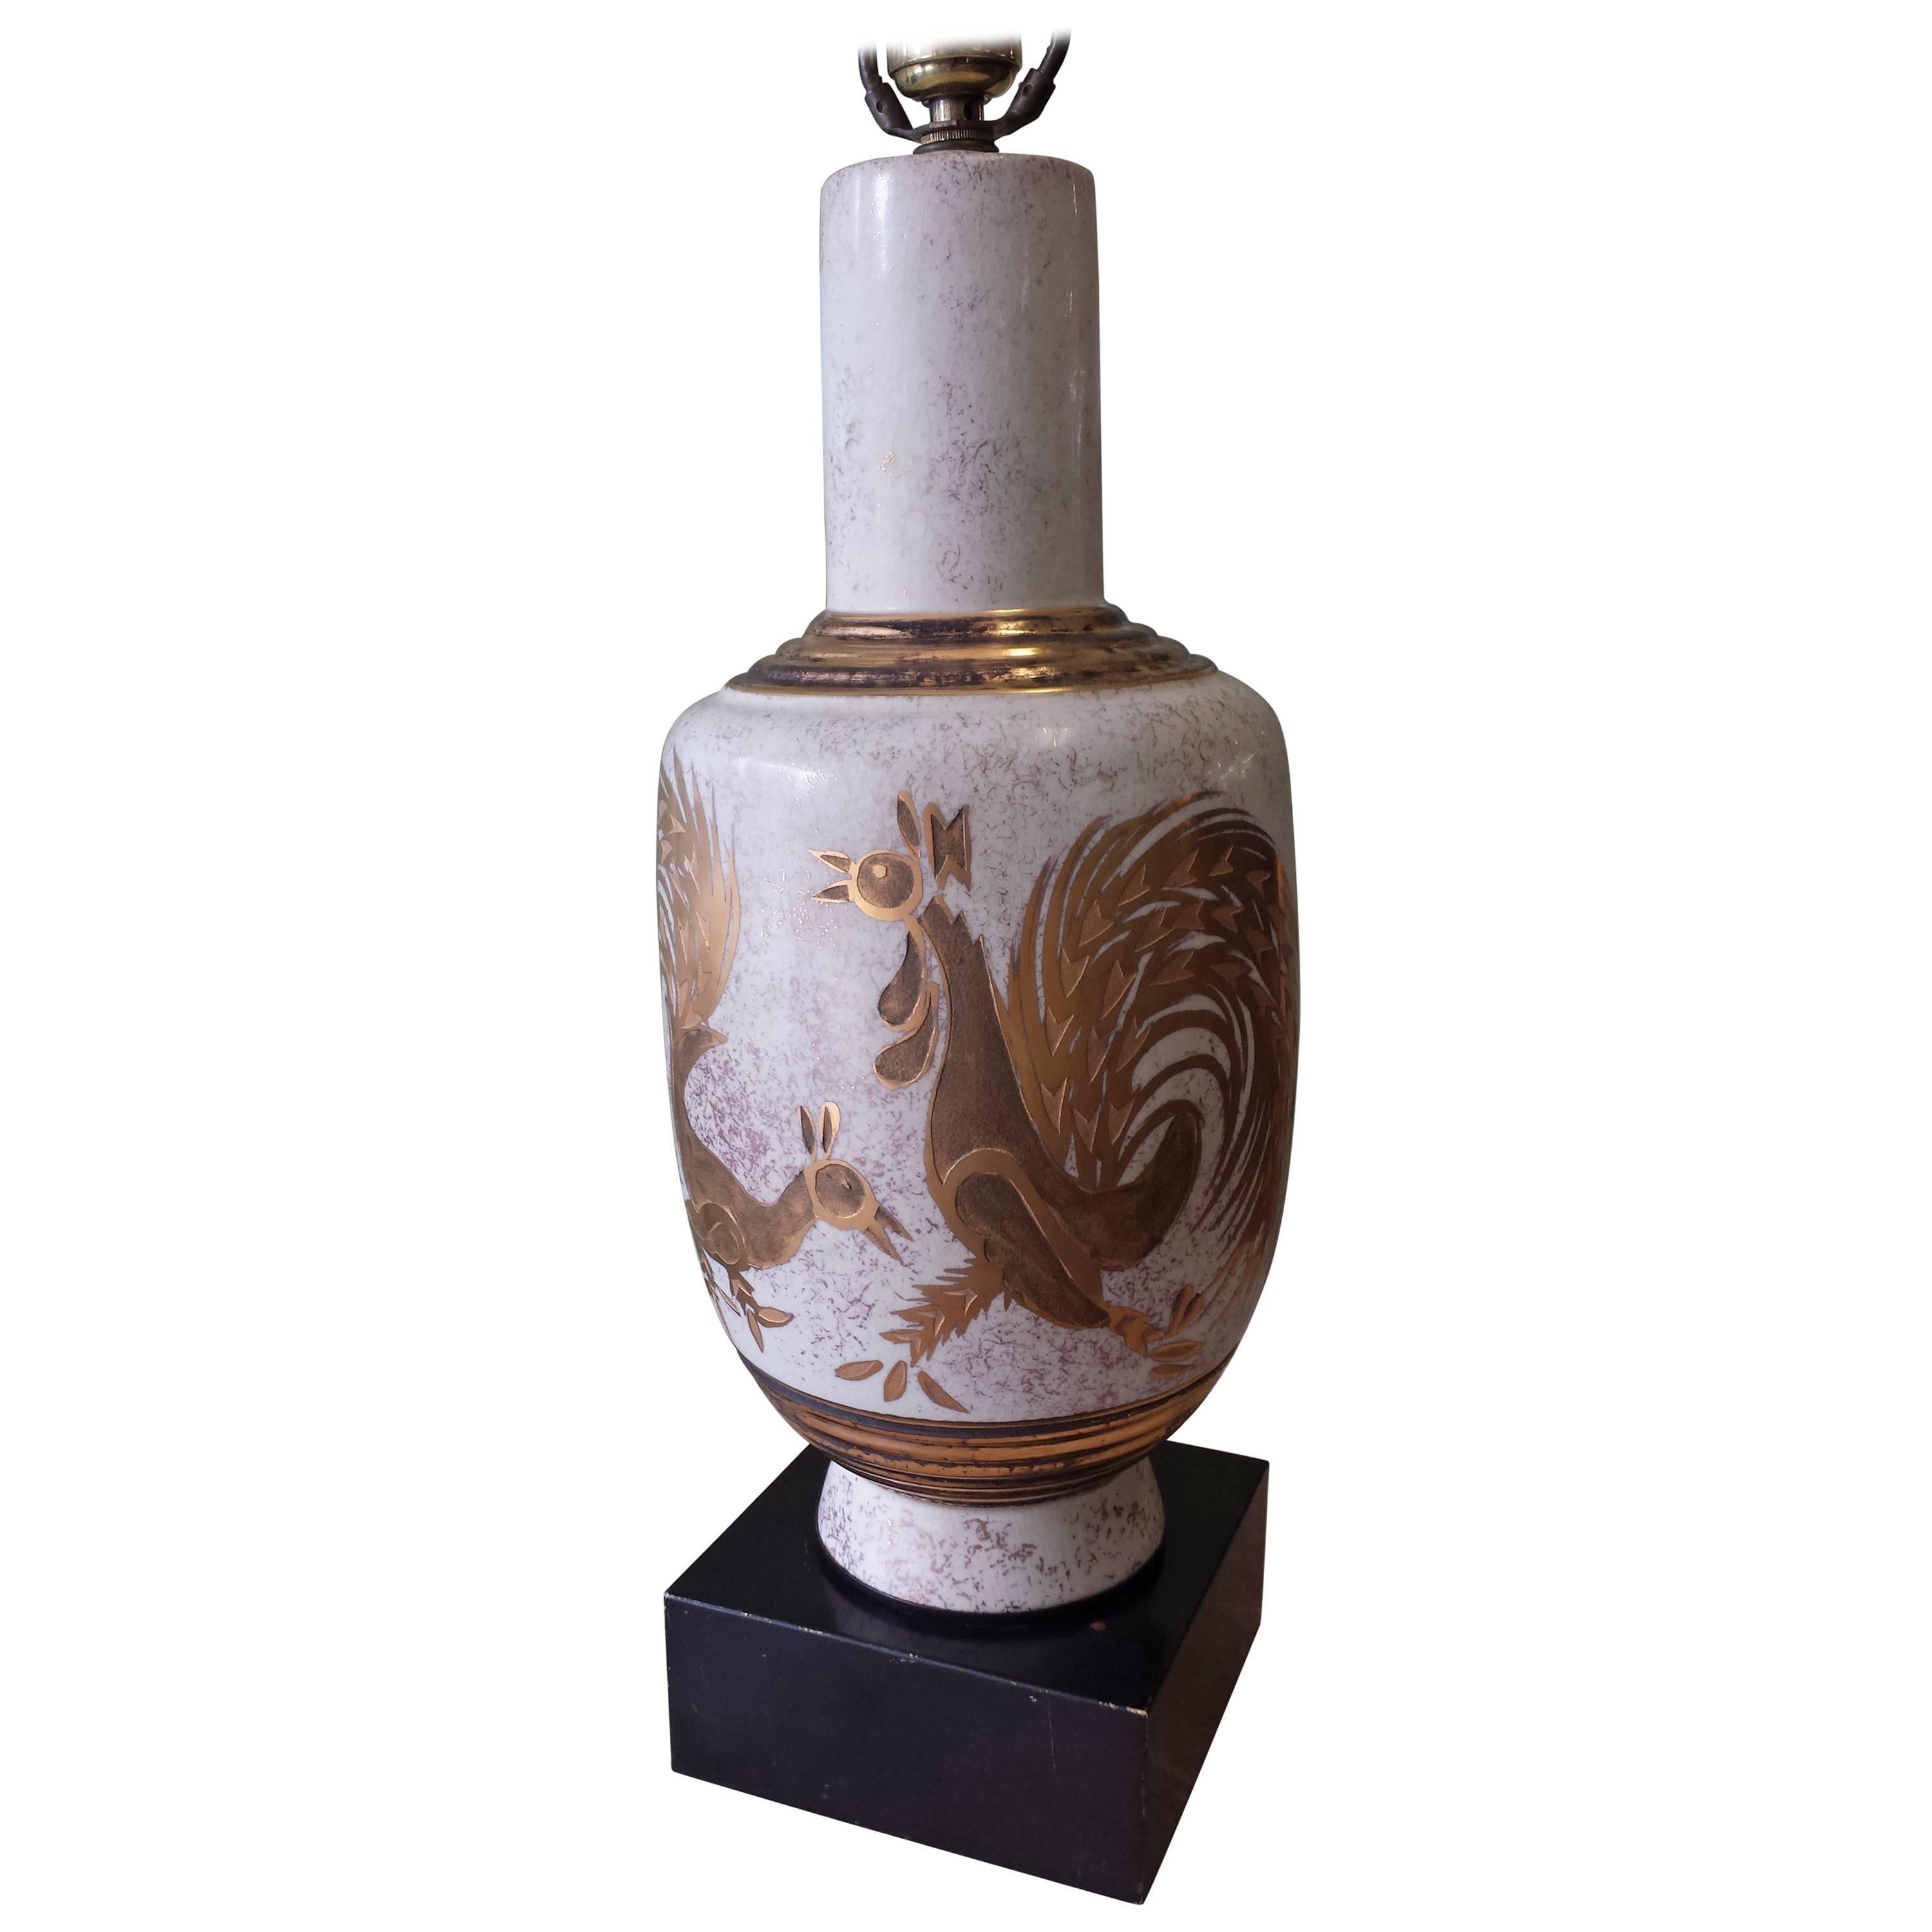 Lampe de bureau Waylande de style Gregory en céramique dorée et gravée à la main avec coqs décorés à la main